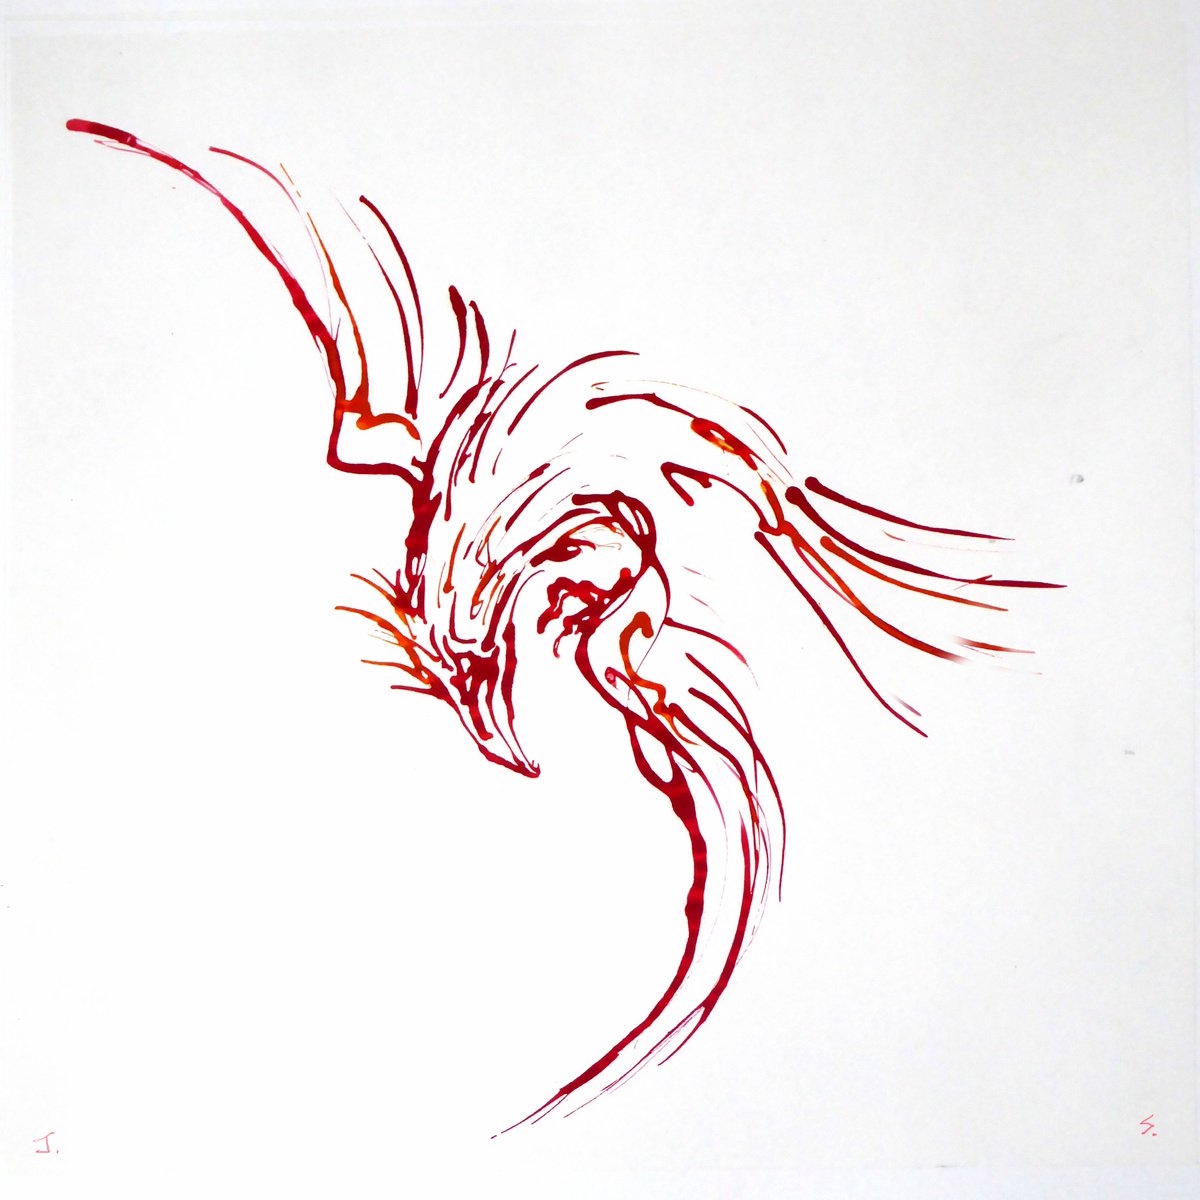 Firebird by John Sharp